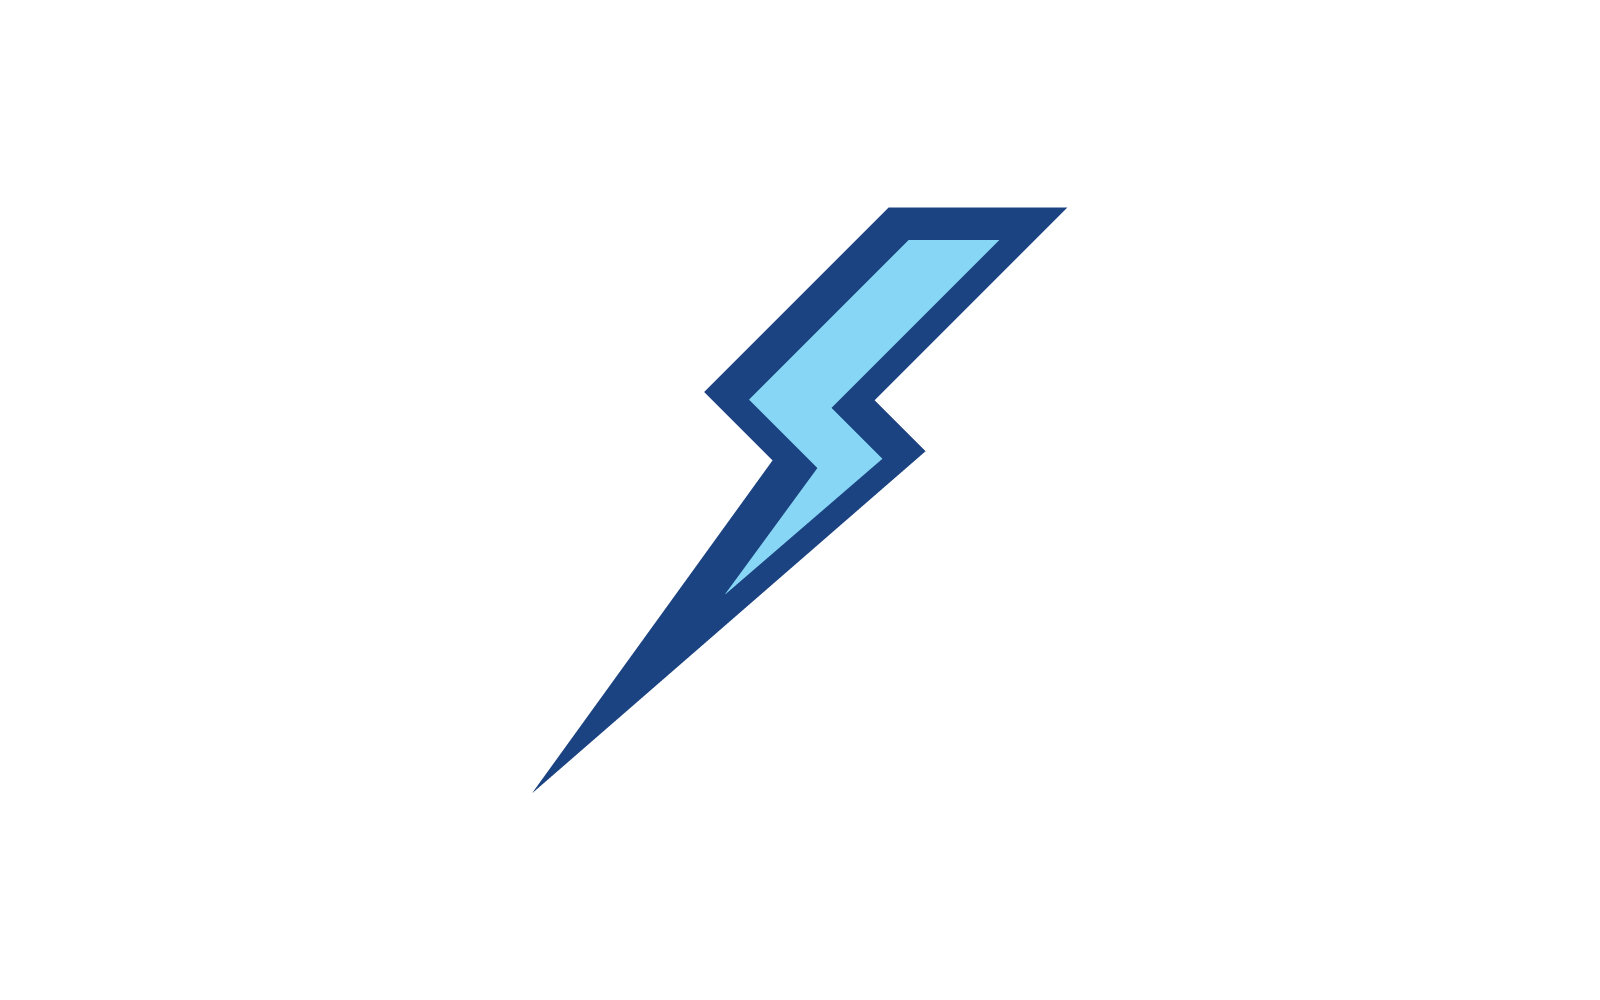 Power lightning power energy logo illustration icon vector